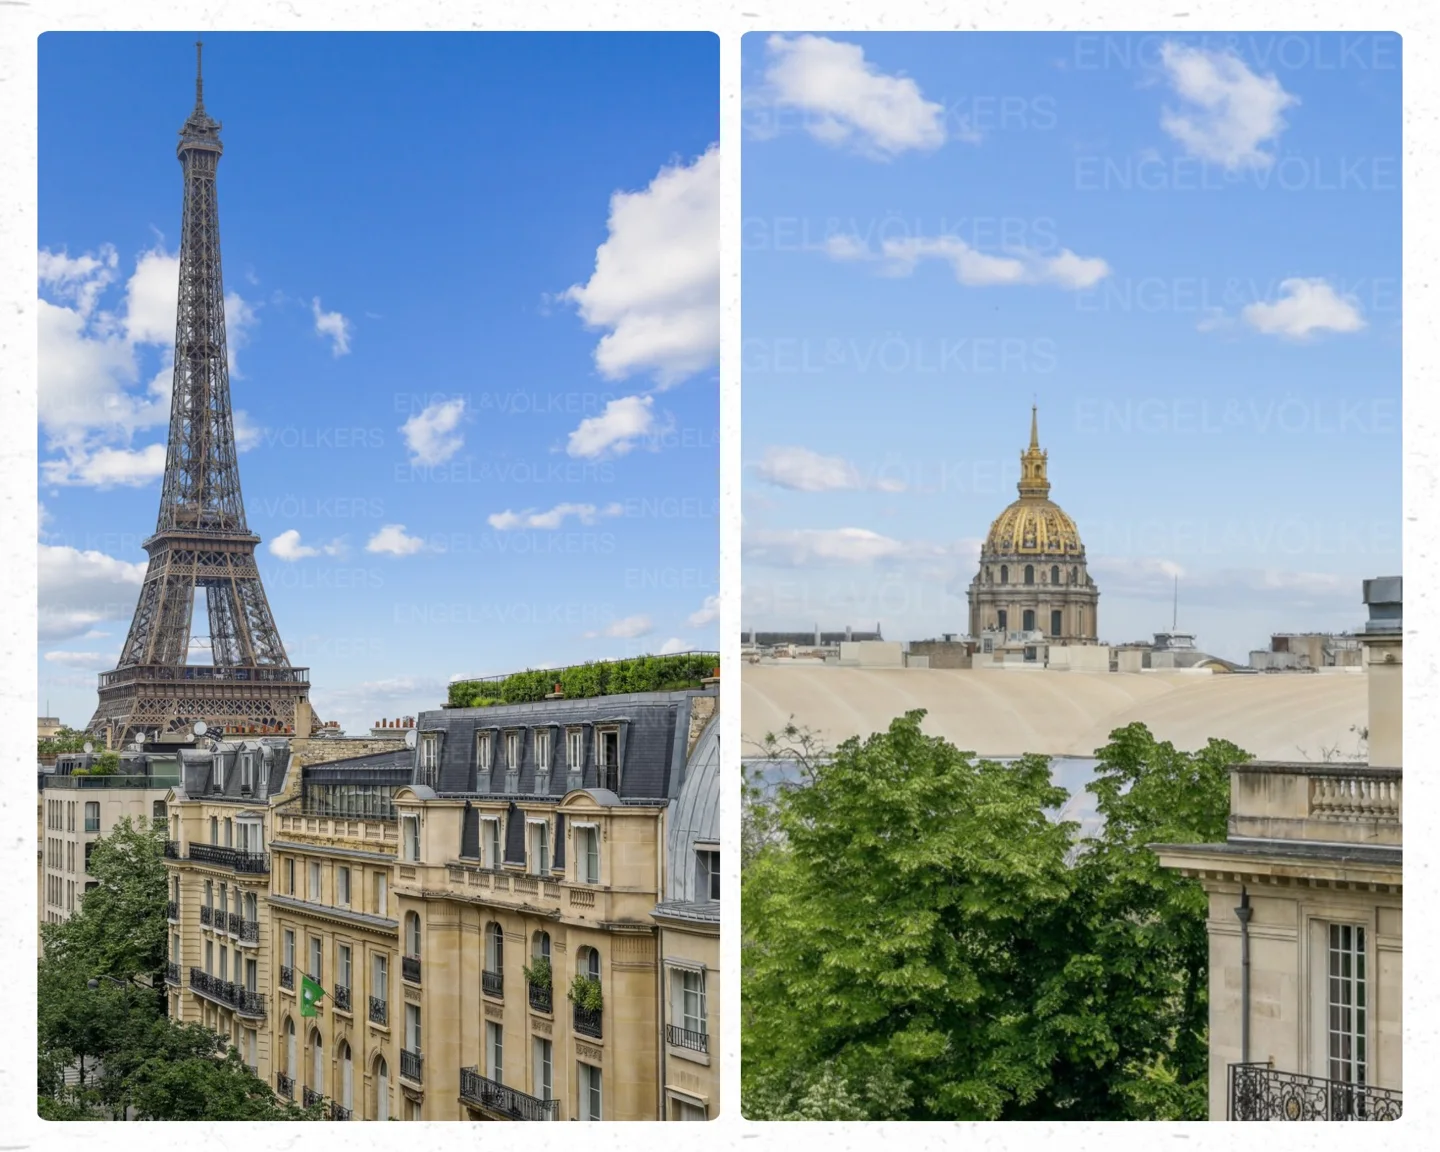 Paris VIIe - Champ de Mars - Apartement with Eiffel Tower view